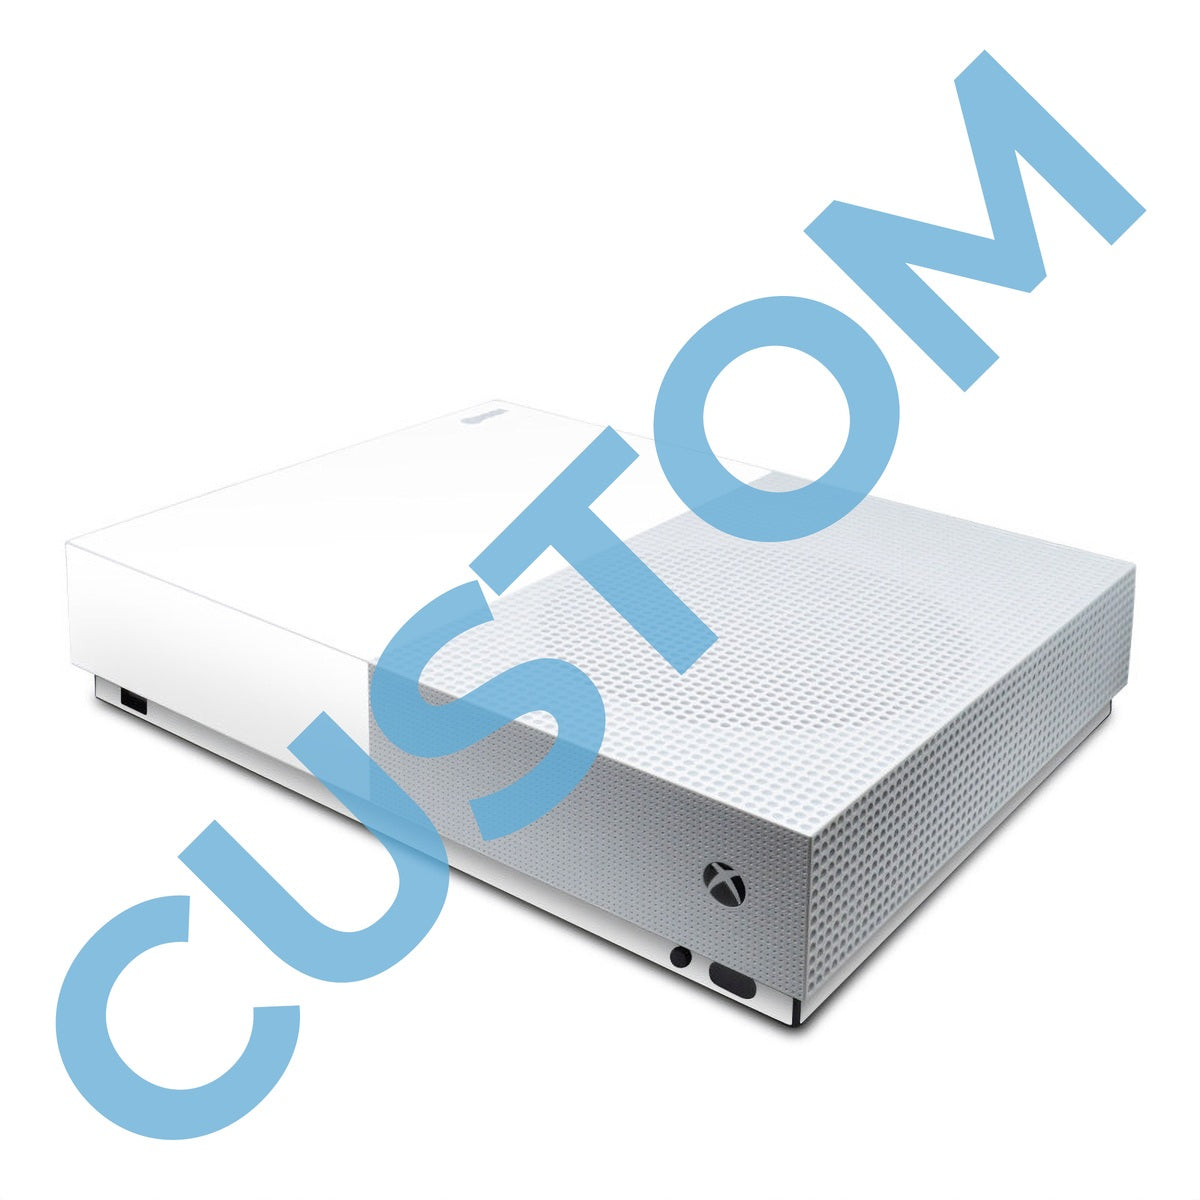 Custom - Microsoft Xbox One S All Digital Edition Skin